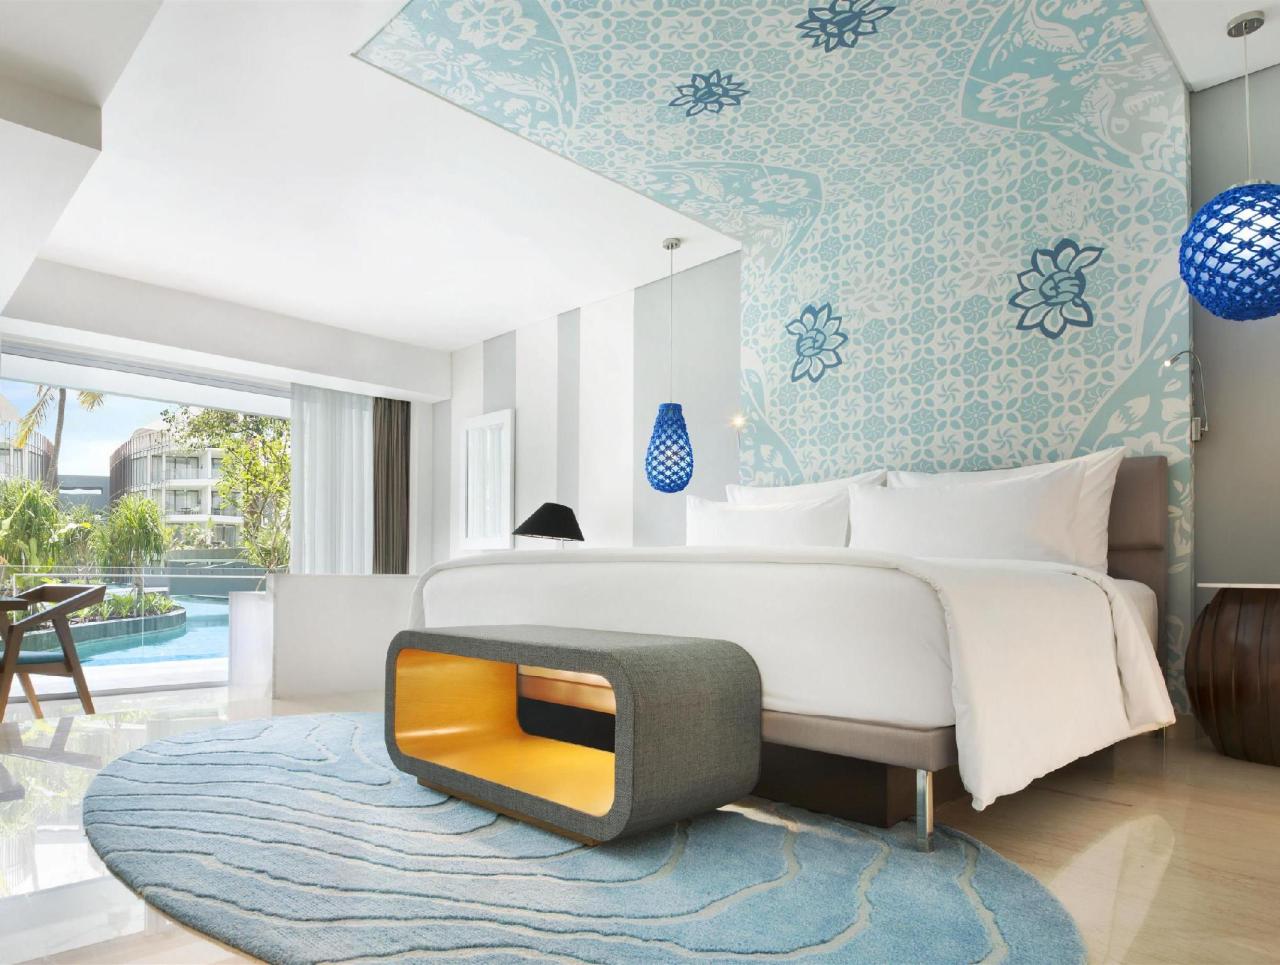 Bonita habitacion en el hotel Le meridien en Bali